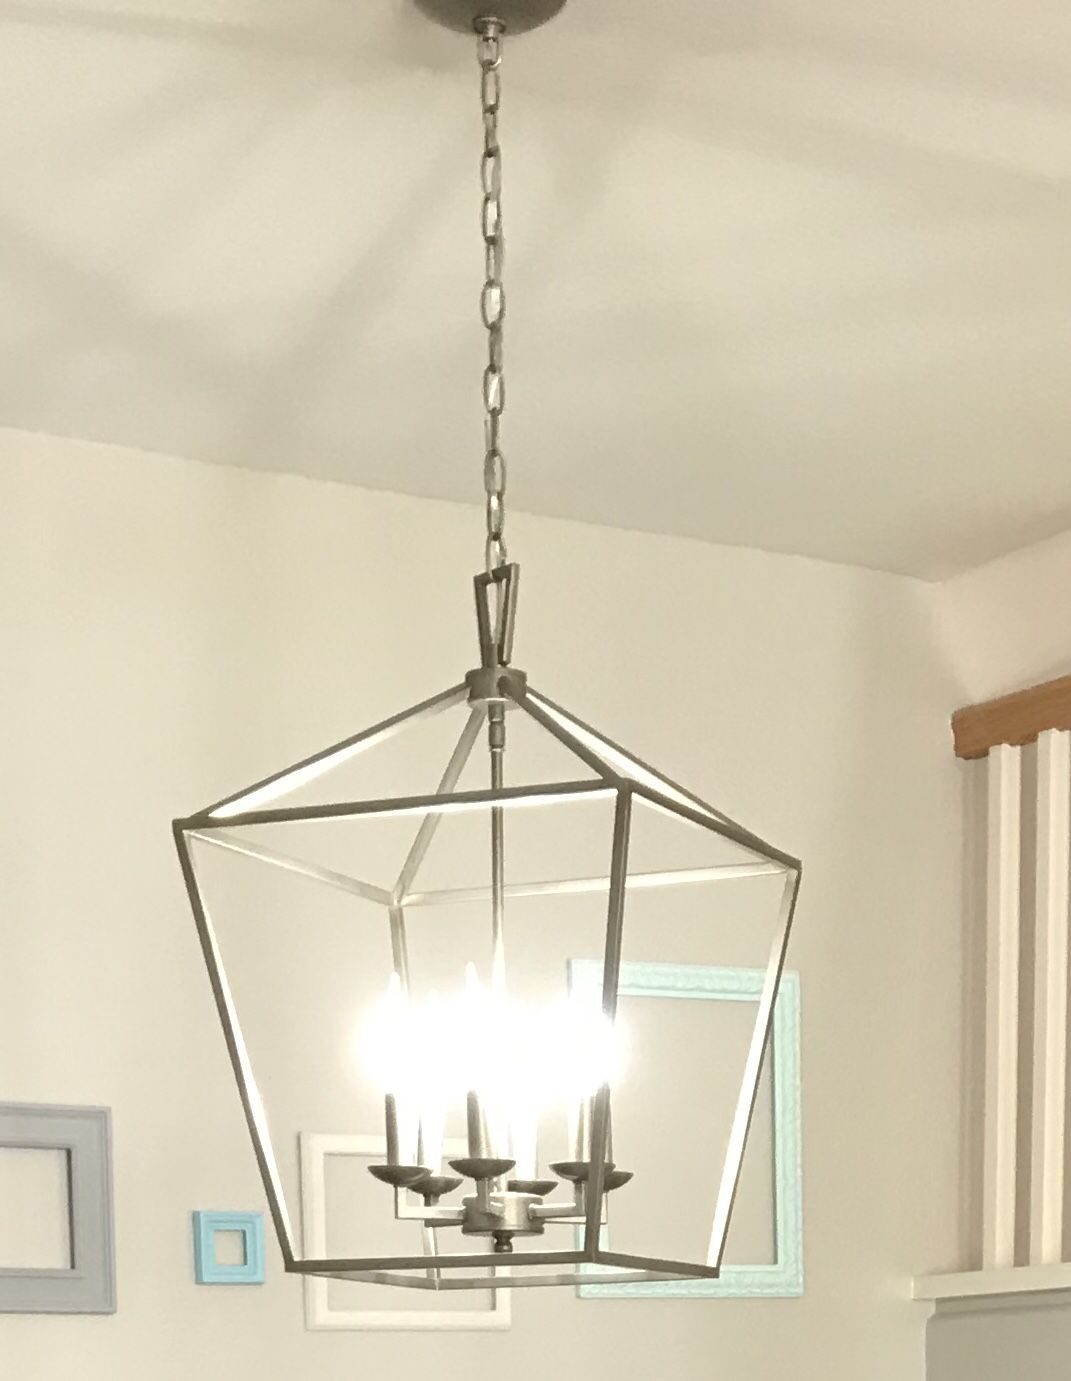 Silver chandelier